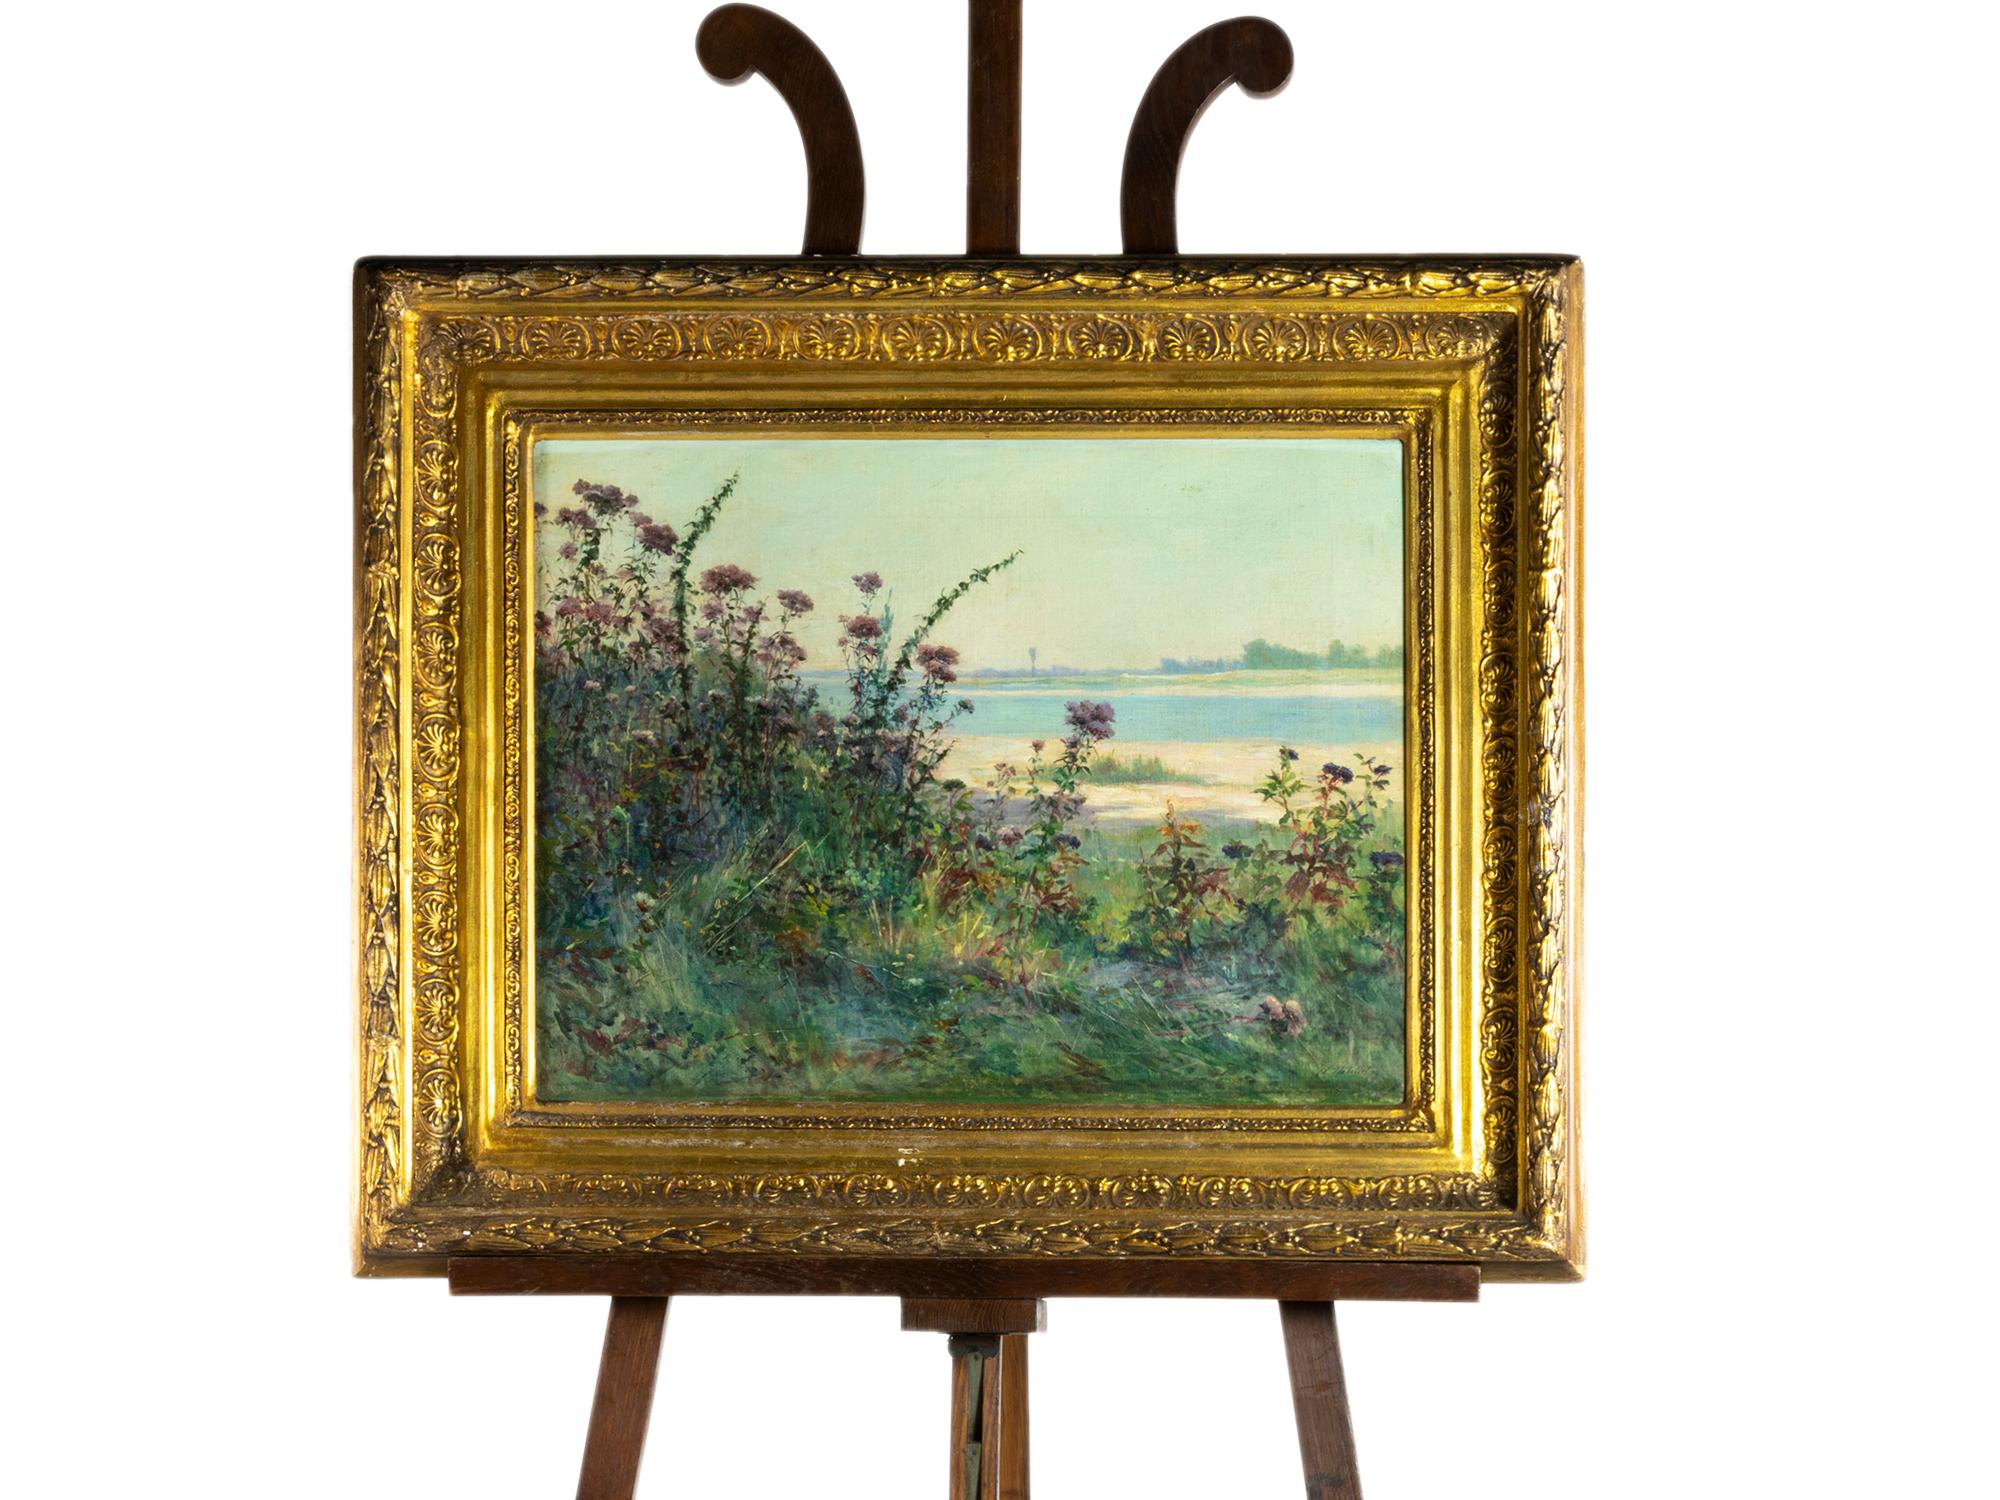 Une peinture à l'huile du 19e siècle sur les rives d'une rivière, passant de l'école de Barbizon au style impressionniste, avec des fleurs sauvages et du sable en contre-plongée.  Peinture bien conservée d'Auguste Michel Nobillet dans le style